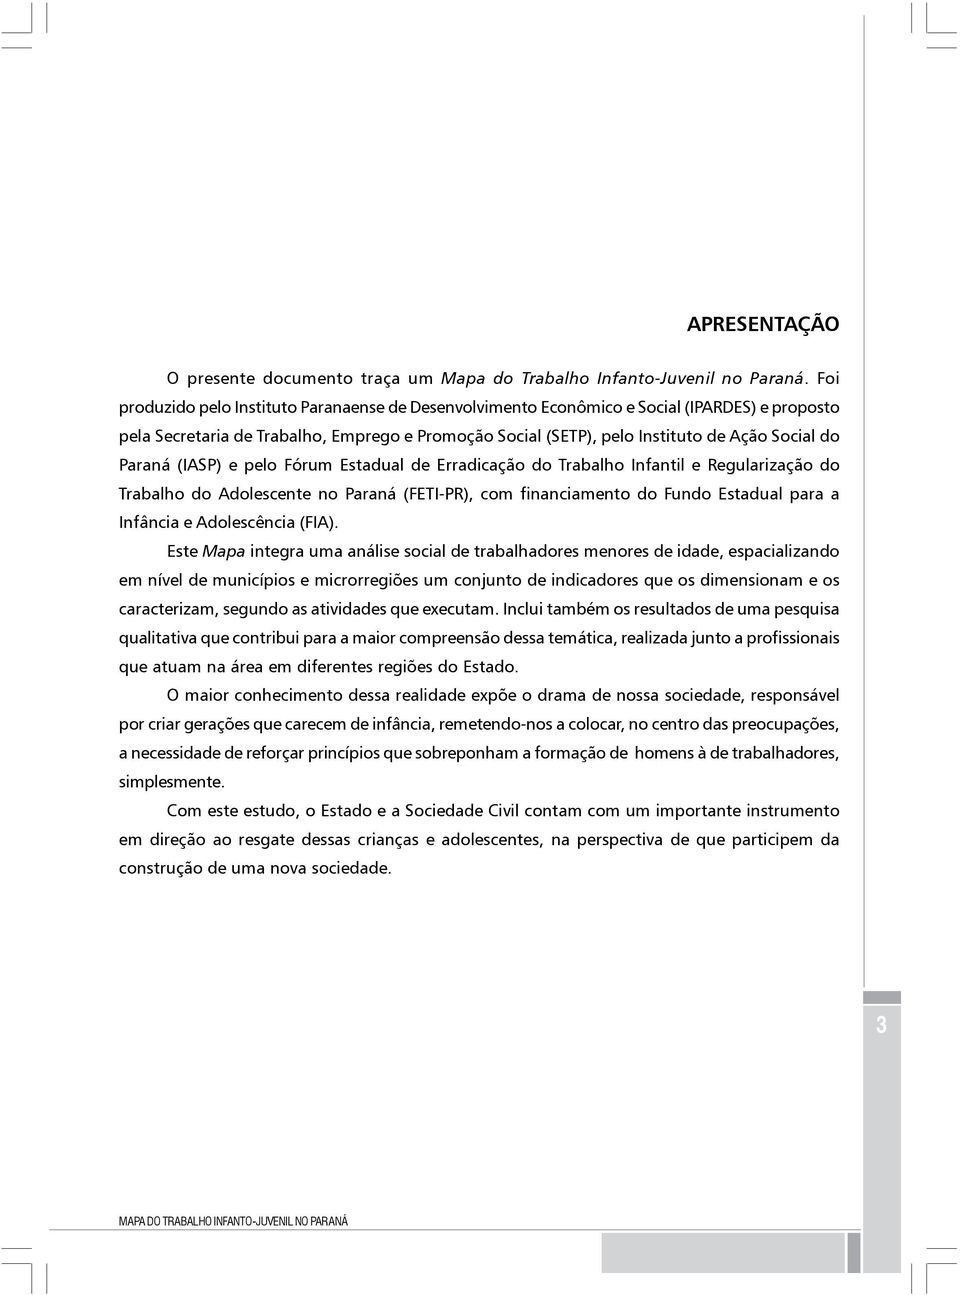 Paraná (IASP) e pelo Fórum Estadual de Erradicação do Trabalho Infantil e Regularização do Trabalho do Adolescente no Paraná (FETI-PR), com financiamento do Fundo Estadual para a Infância e